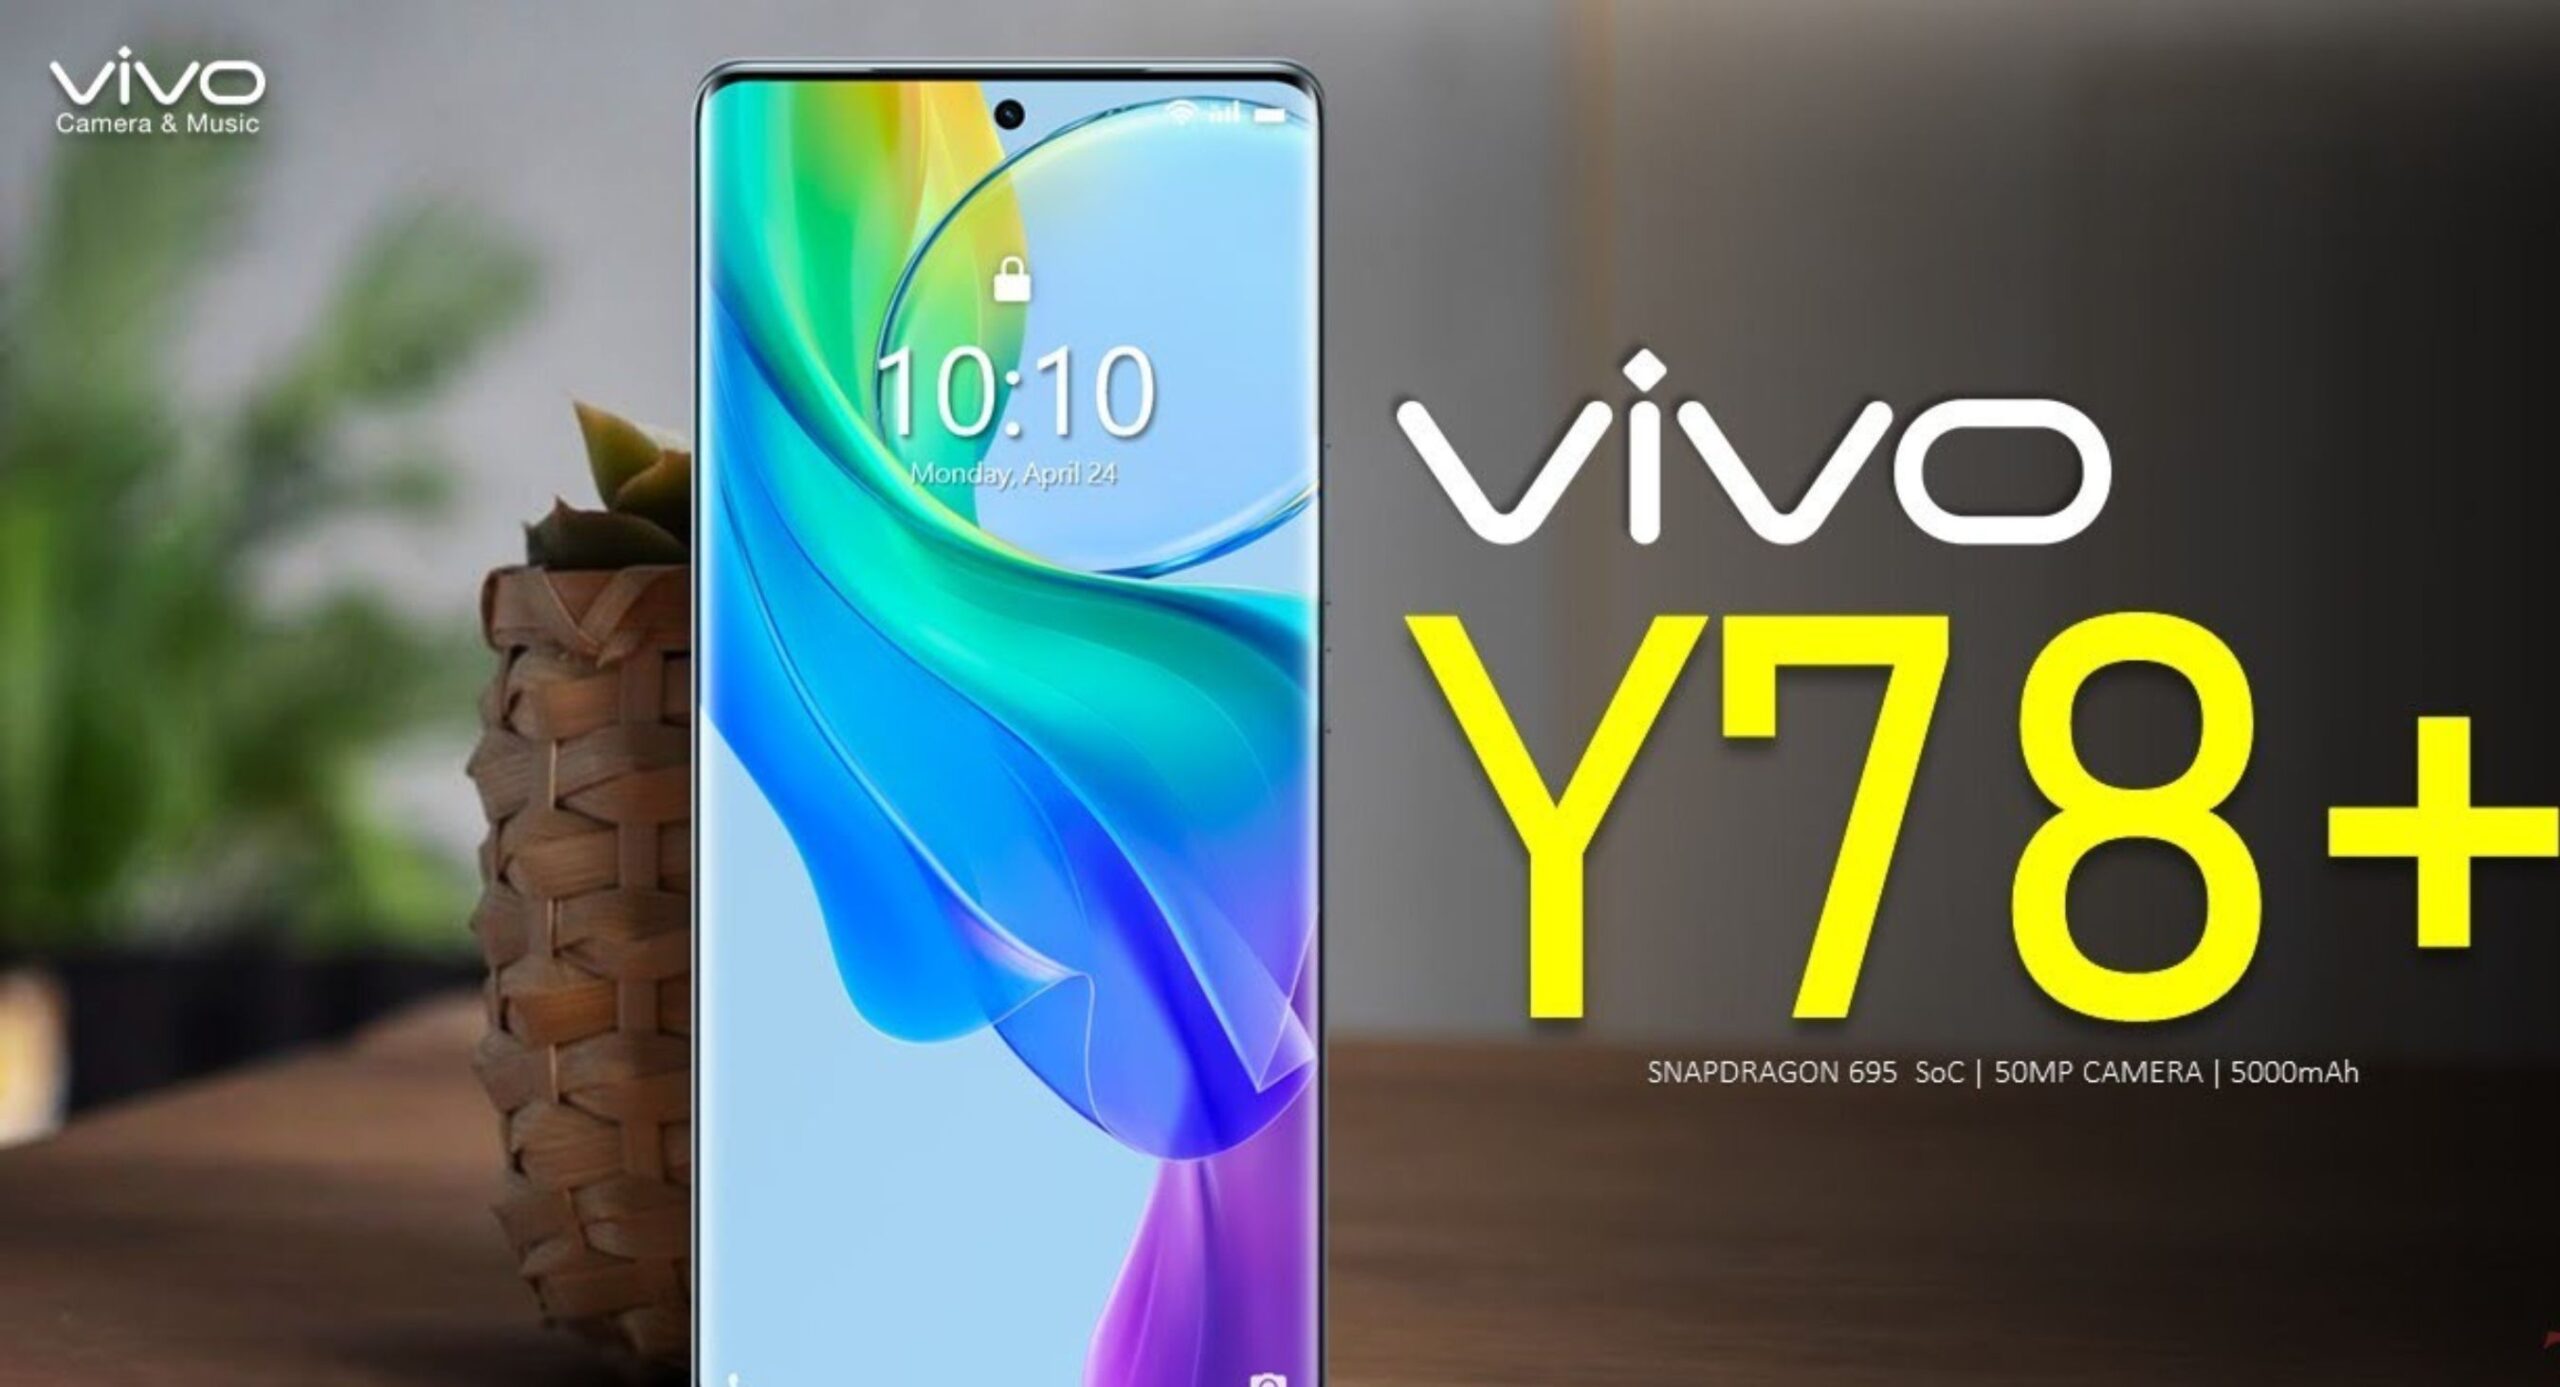 Vivo Y78+ 5G Smartphone